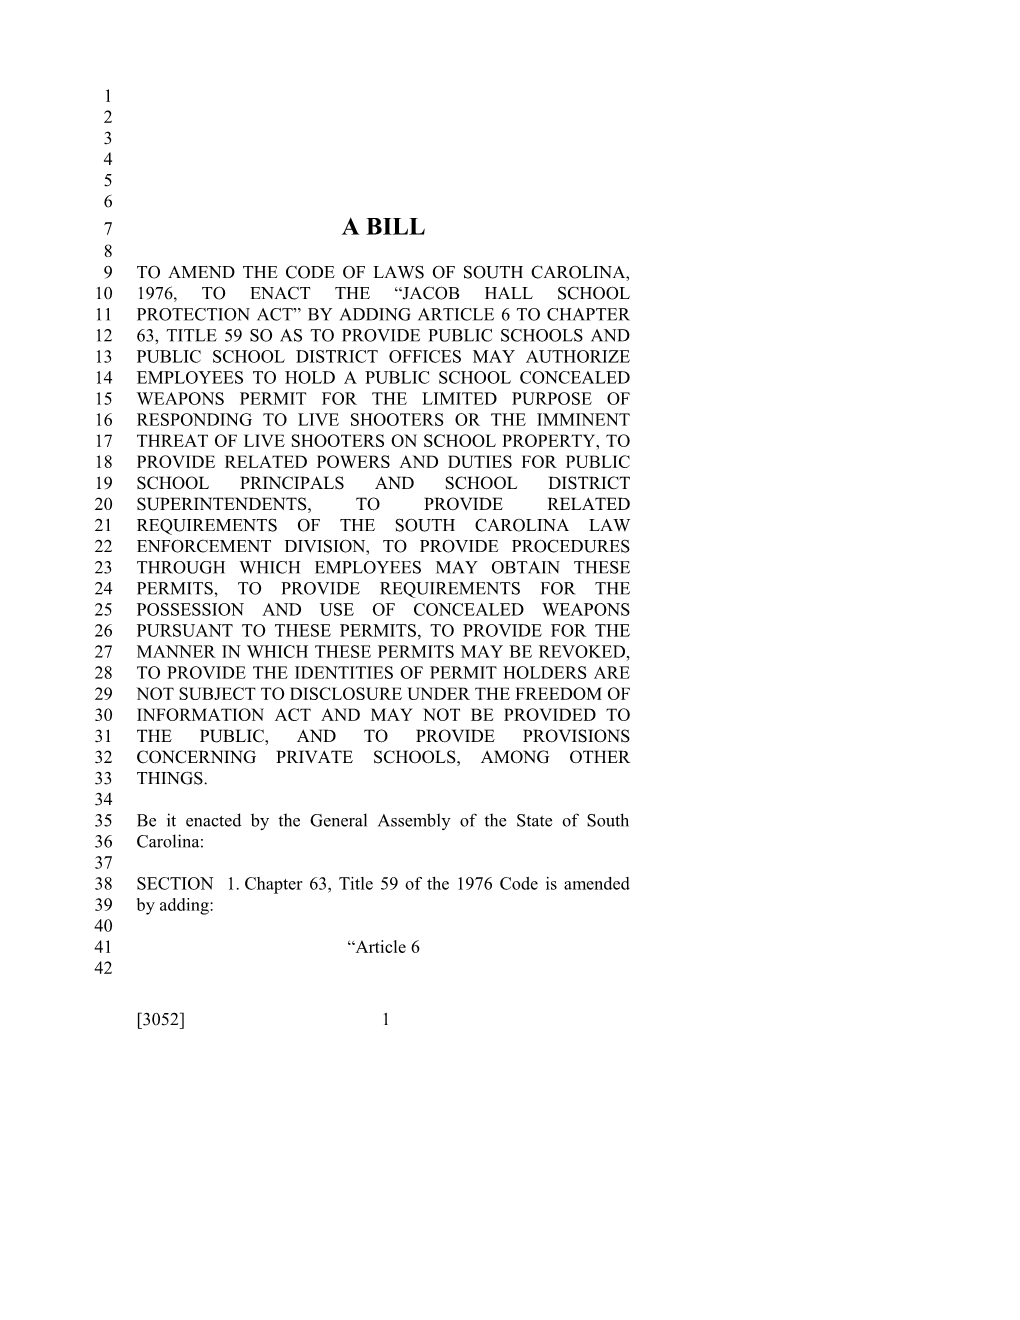 2017-2018 Bill 3052 Text of Previous Version (Dec. 15, 2016) - South Carolina Legislature Online